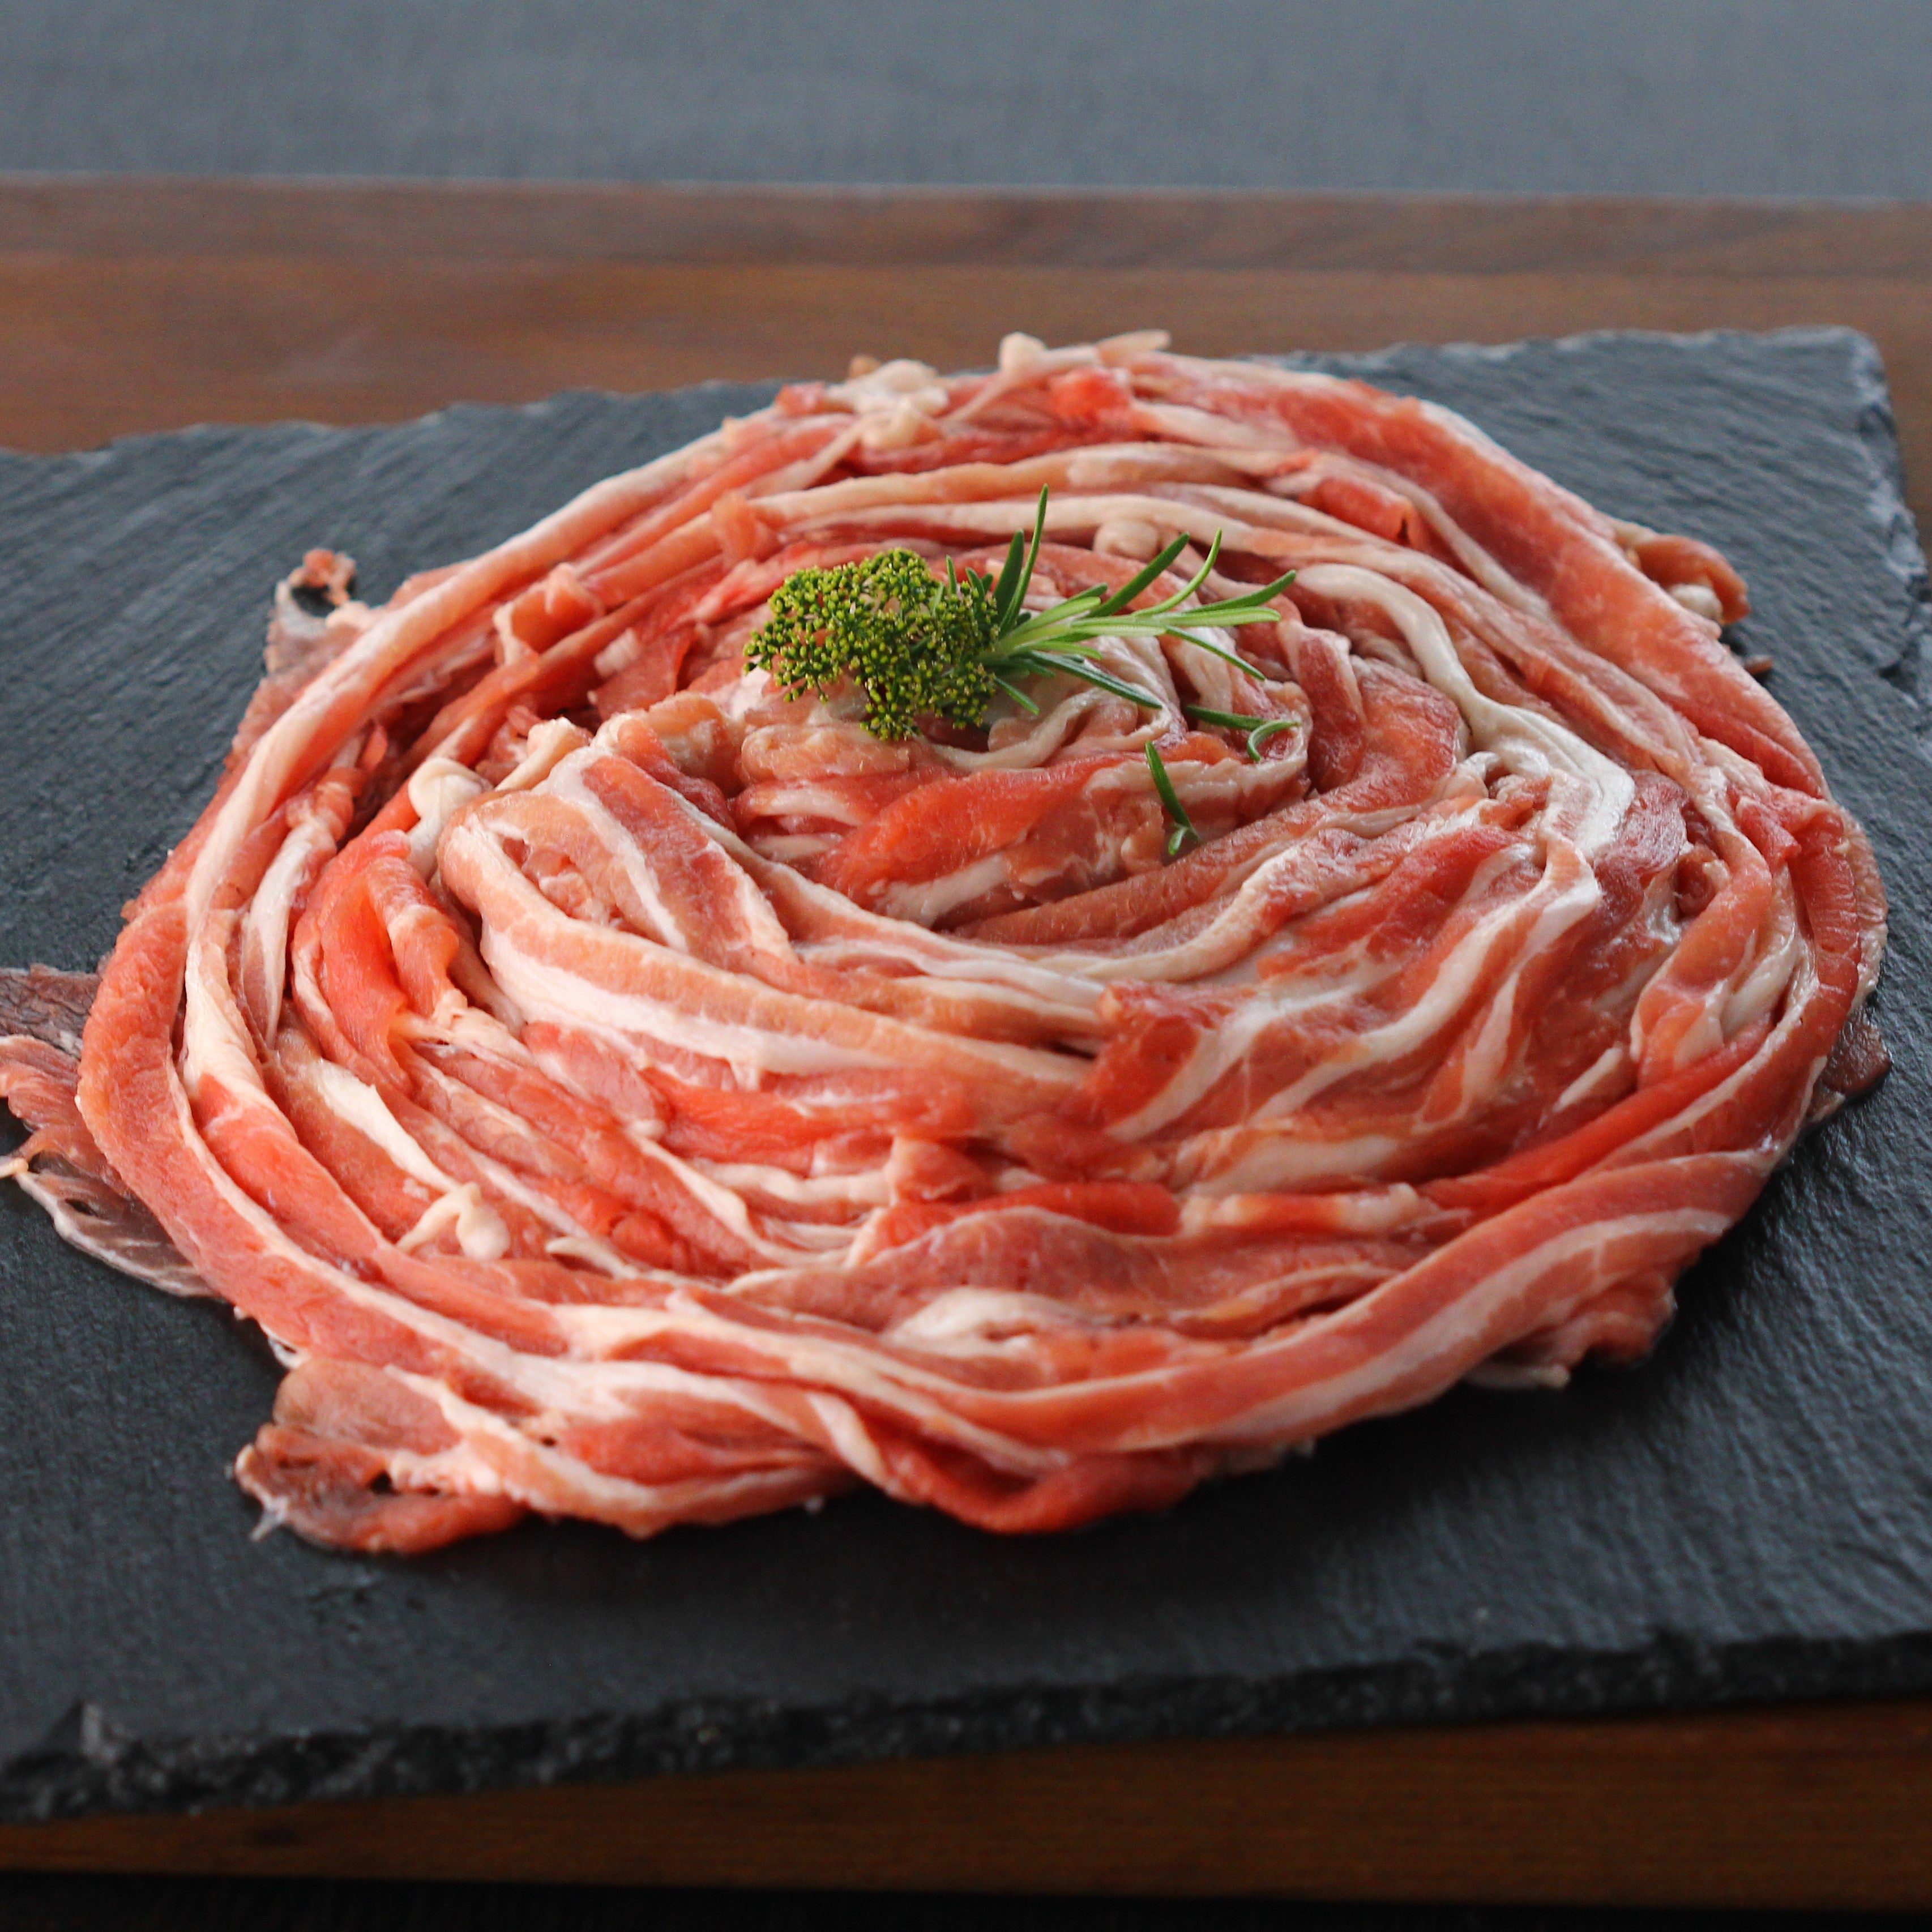 豚バラスライス 1㎏ 豚肉 スライス肉 国産 業務用 グルメ 大容量